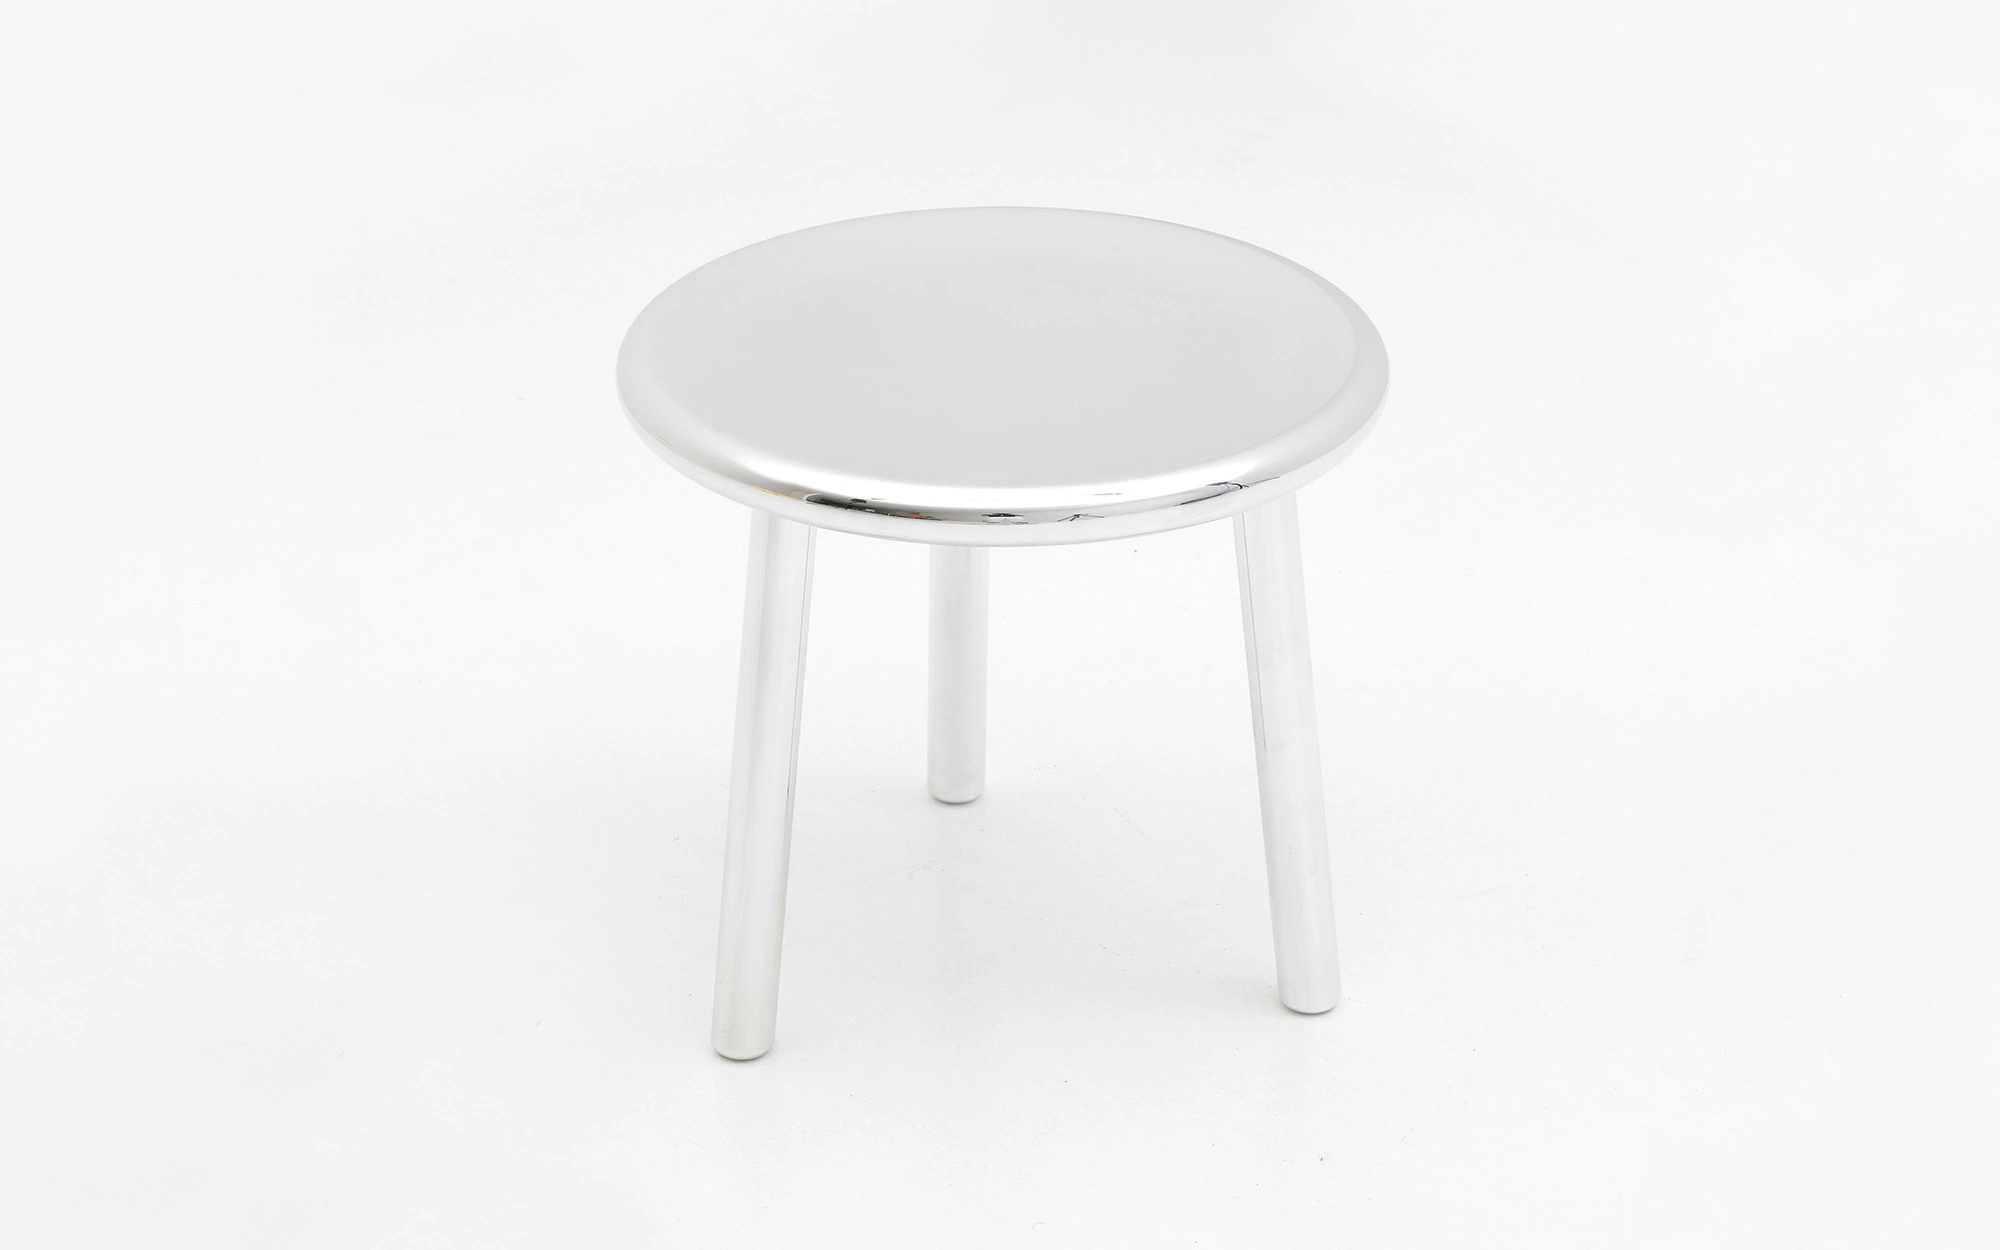 3-legged stool - Jasper Morrison - Miscellaneous - Galerie kreo